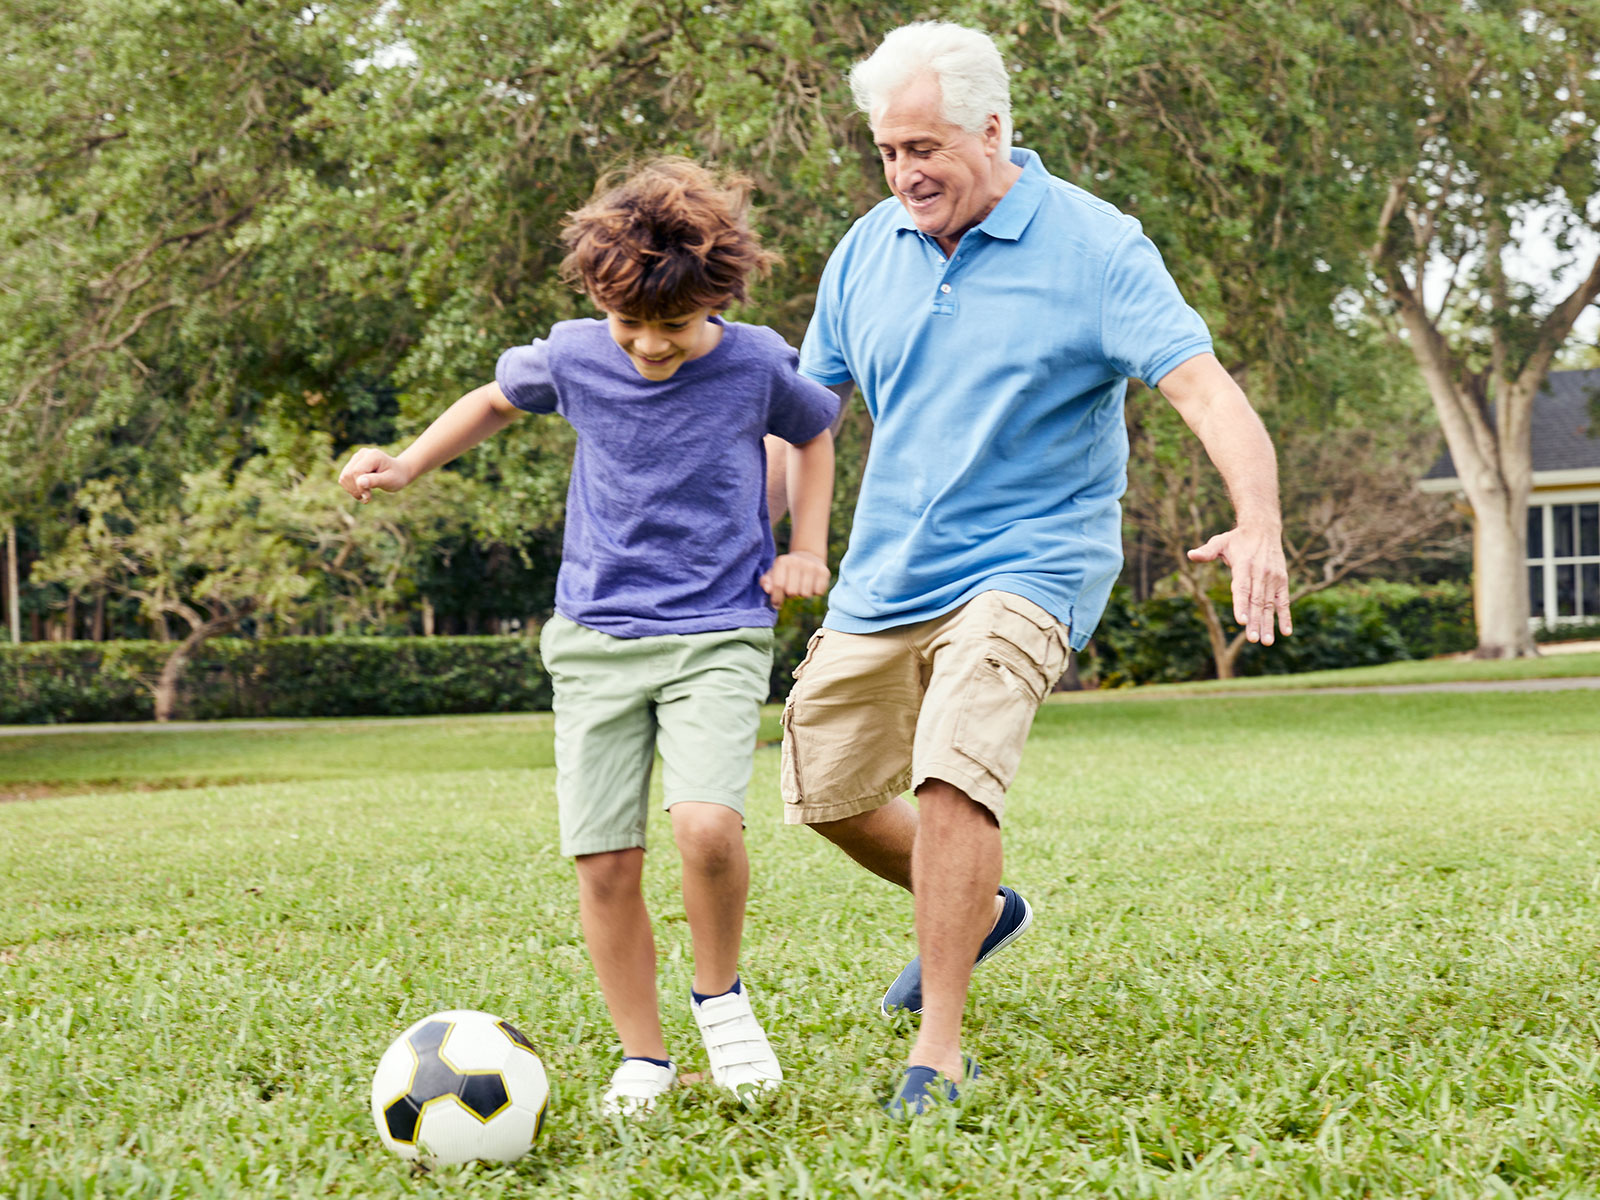 Abuelo jugando al fútbol con su nieto.